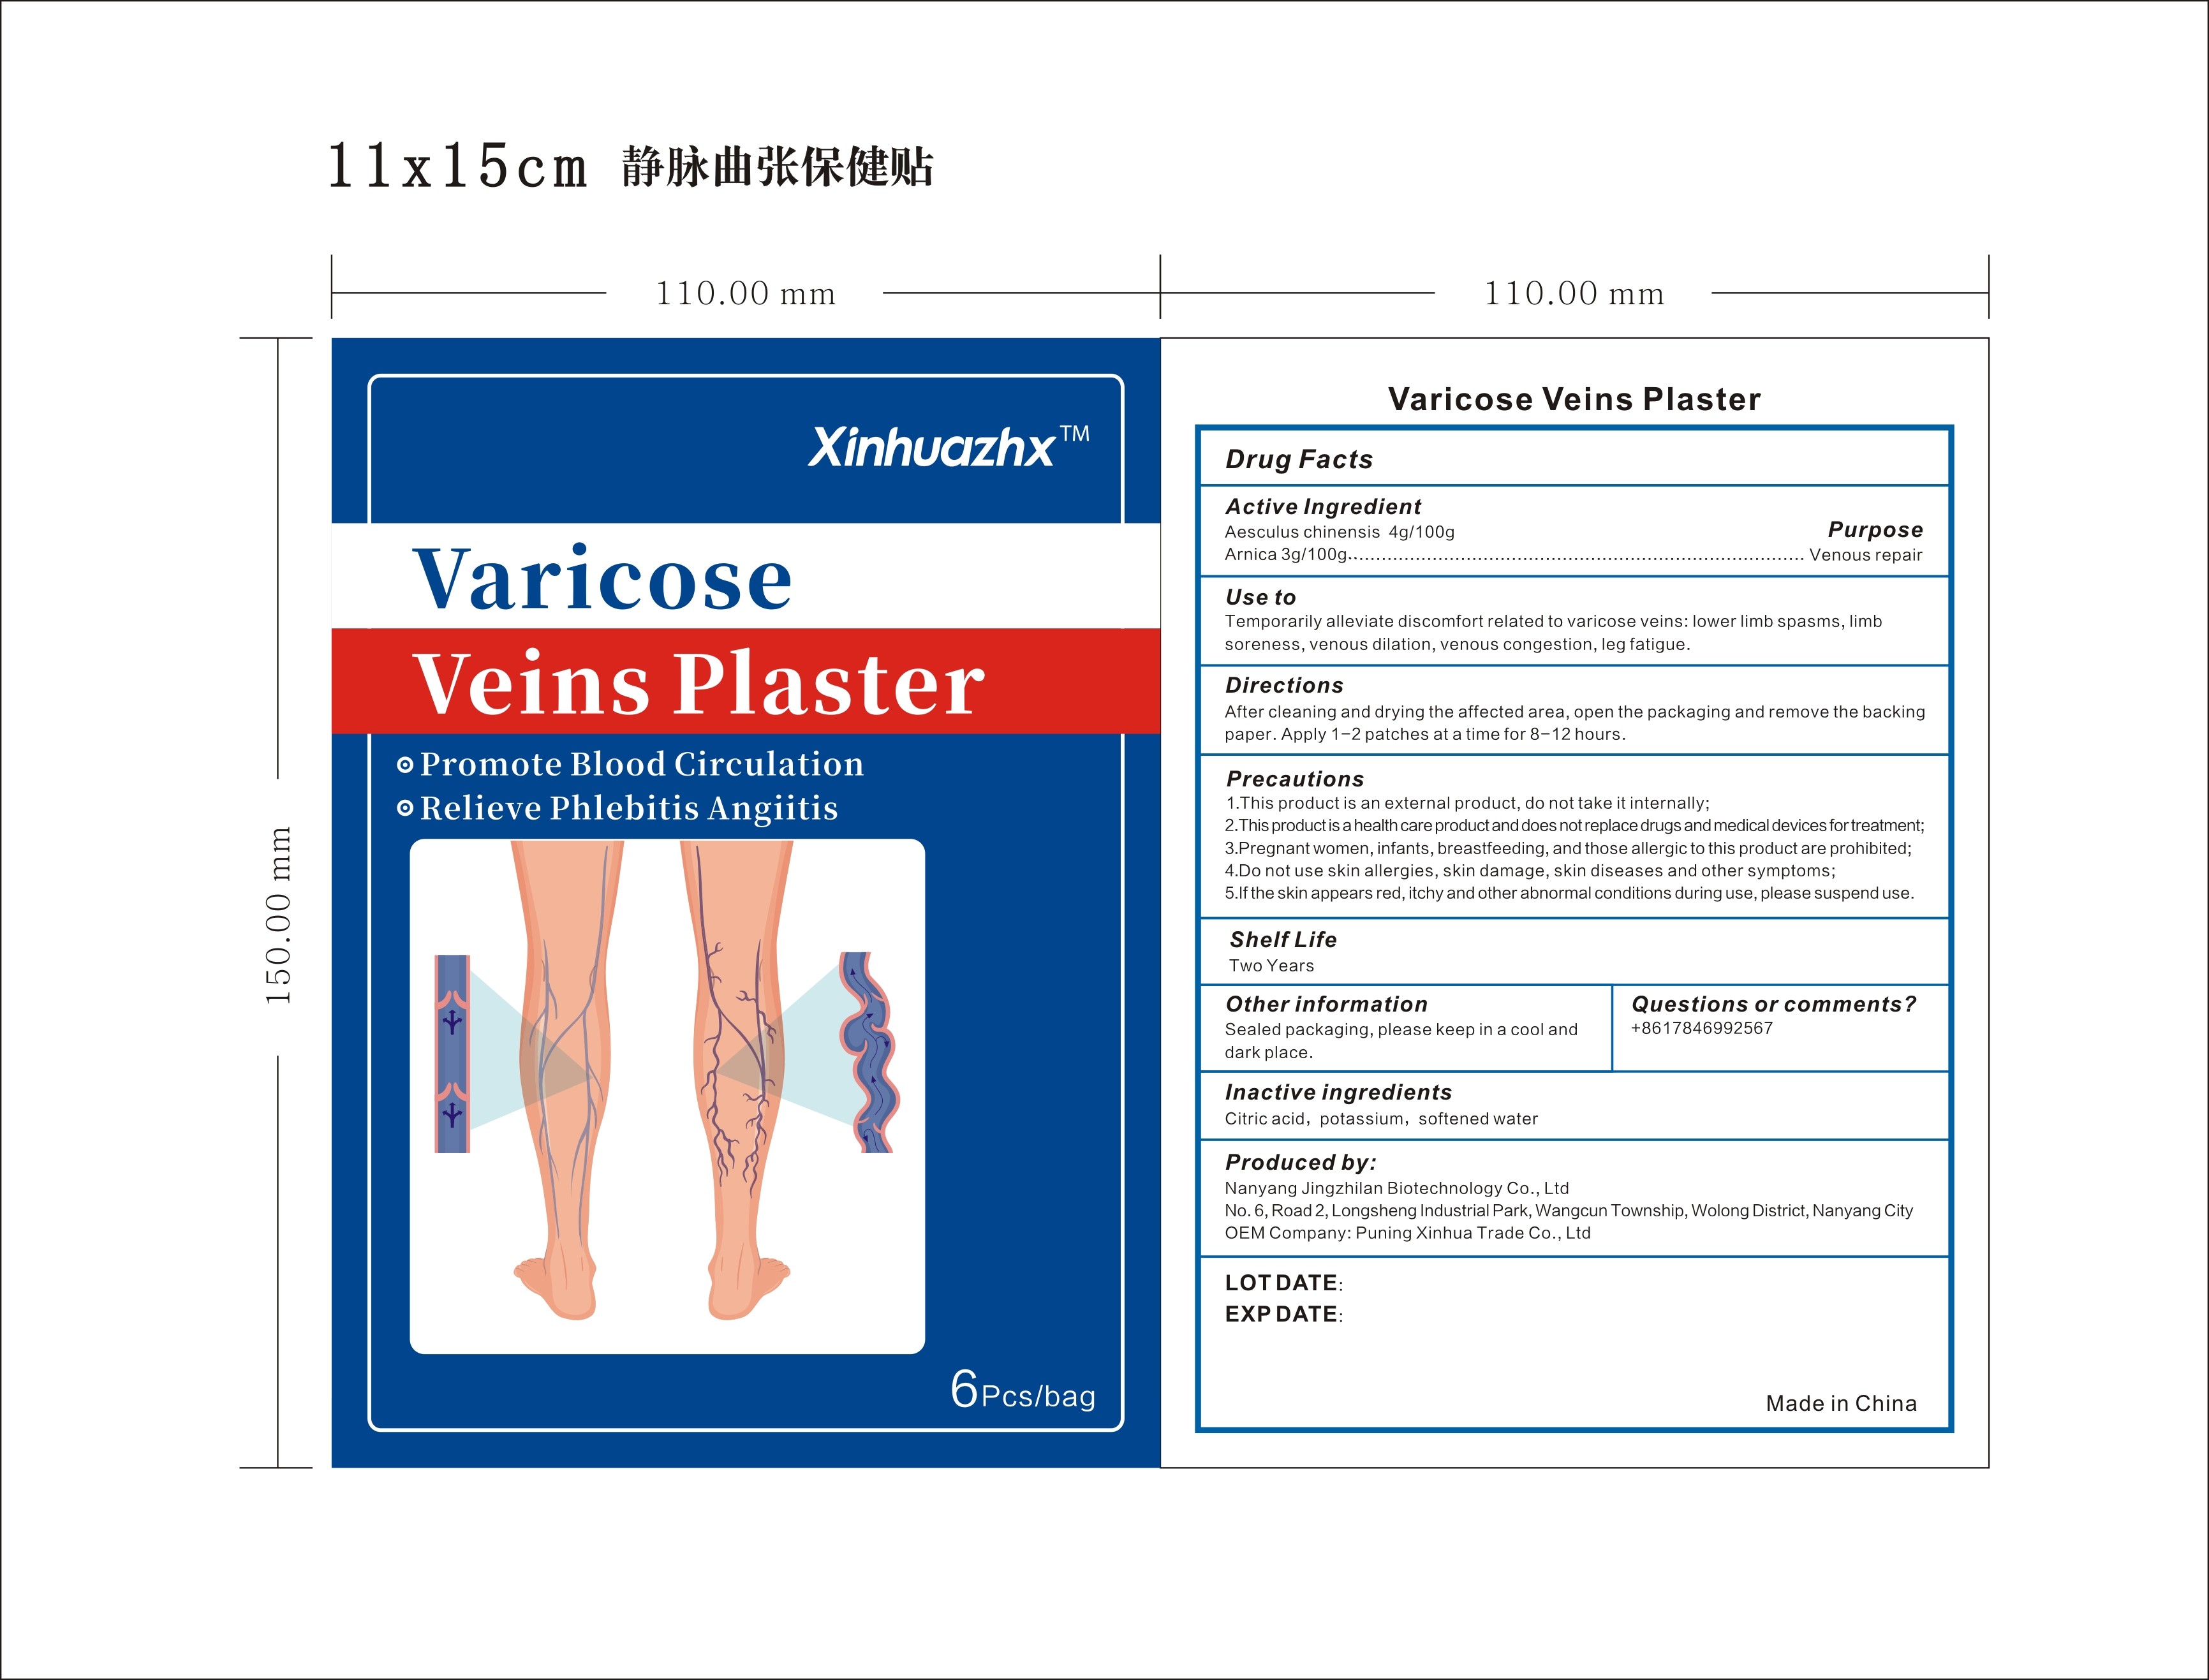 Xinhuazhx Varicoce Veins Plaster